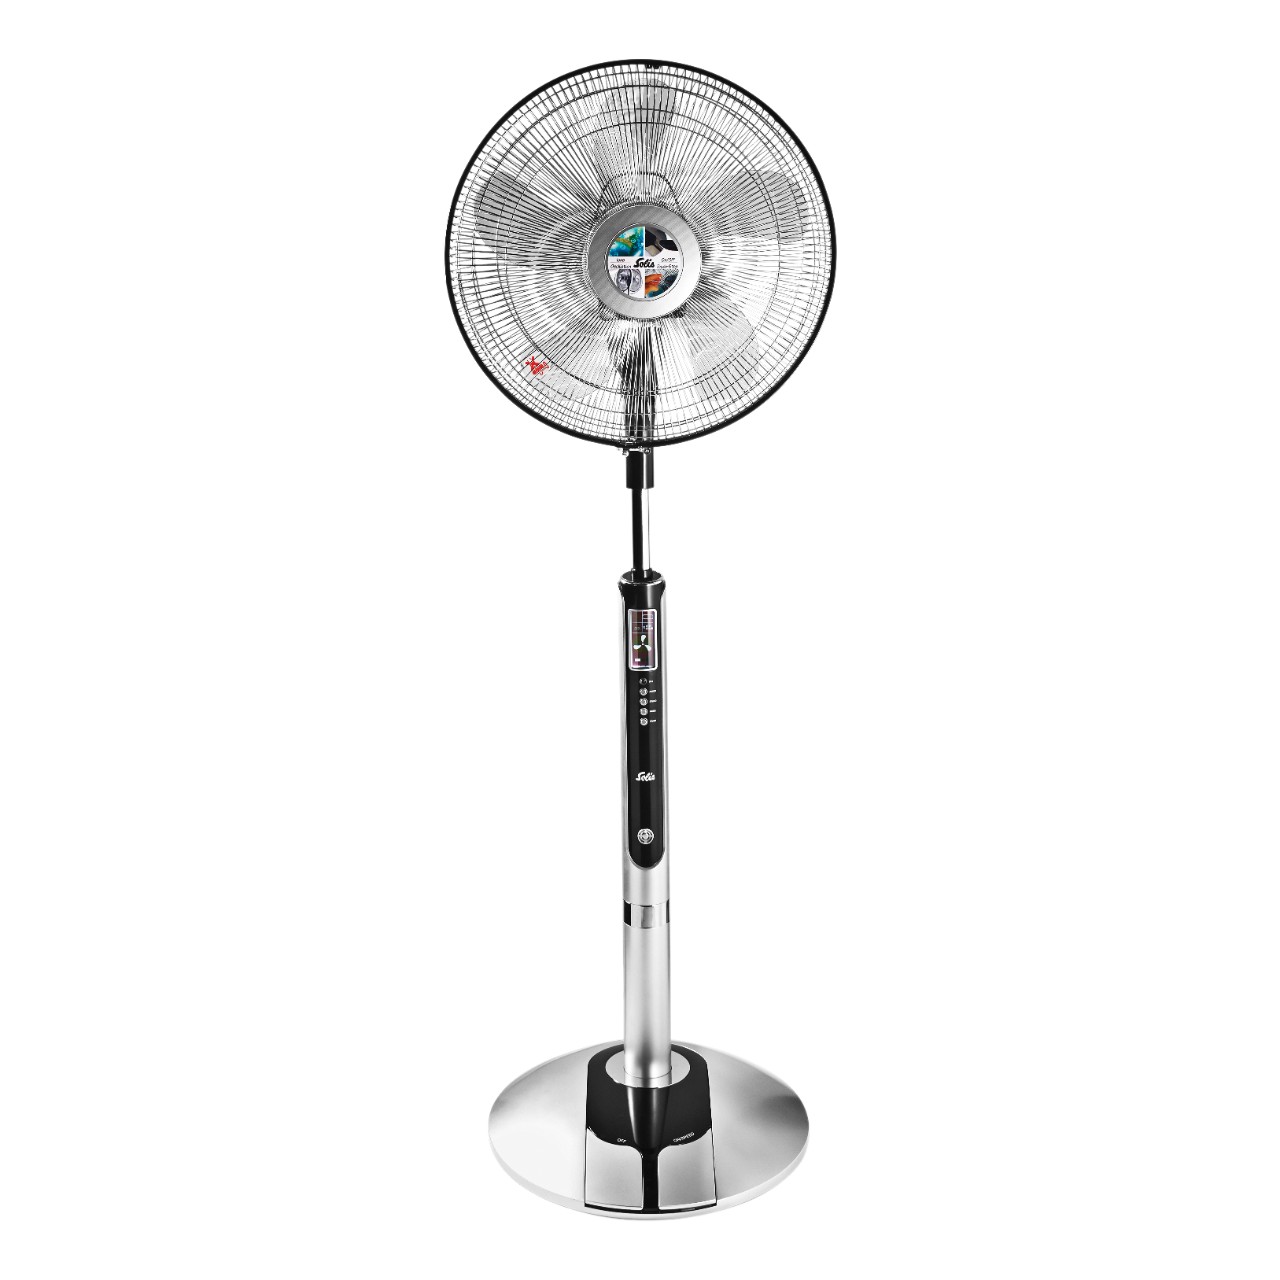 Worstelen Inloggegevens Puno Solis Fan-Tastic ventilator type 750 Doos | Sligro.nl